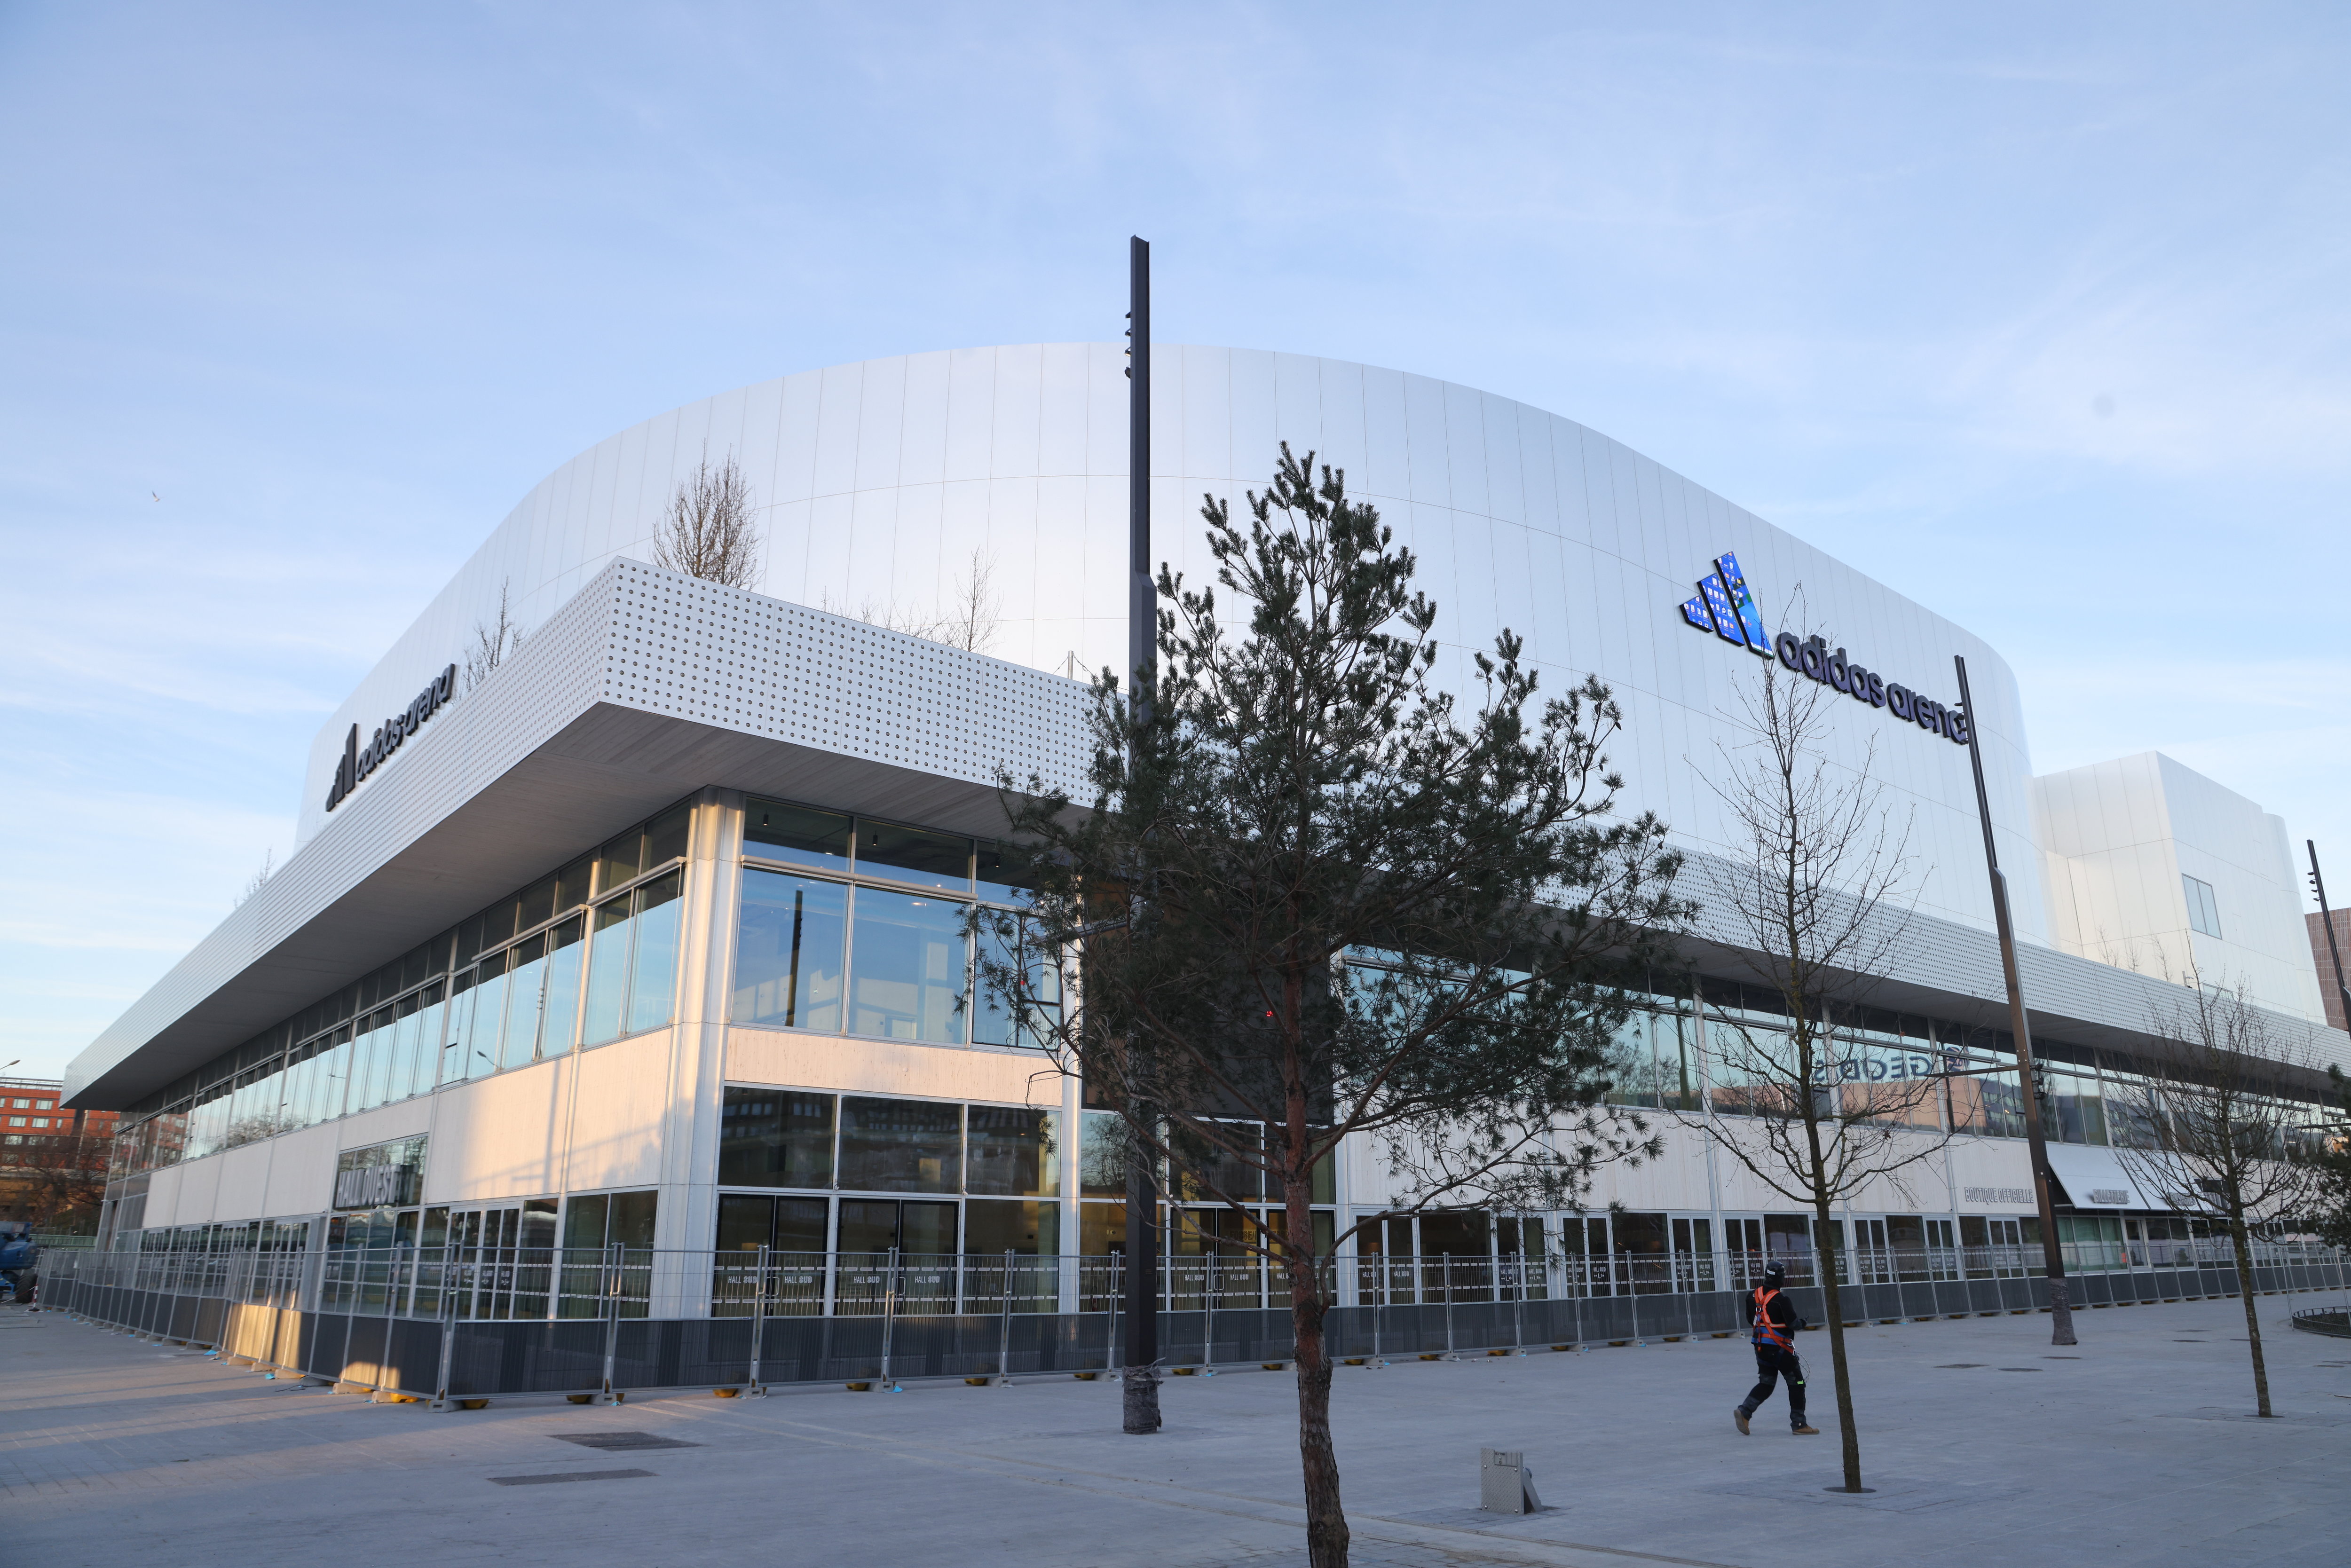 Paris (XVIIIe), le 24 avril. L’Adidas Arena, inaugurée en février, est, avec le centre aquatique, la seule enceinte spécialement conçue pour les Jeux olympiques et paralympiques. LP/Ph. Lavieille